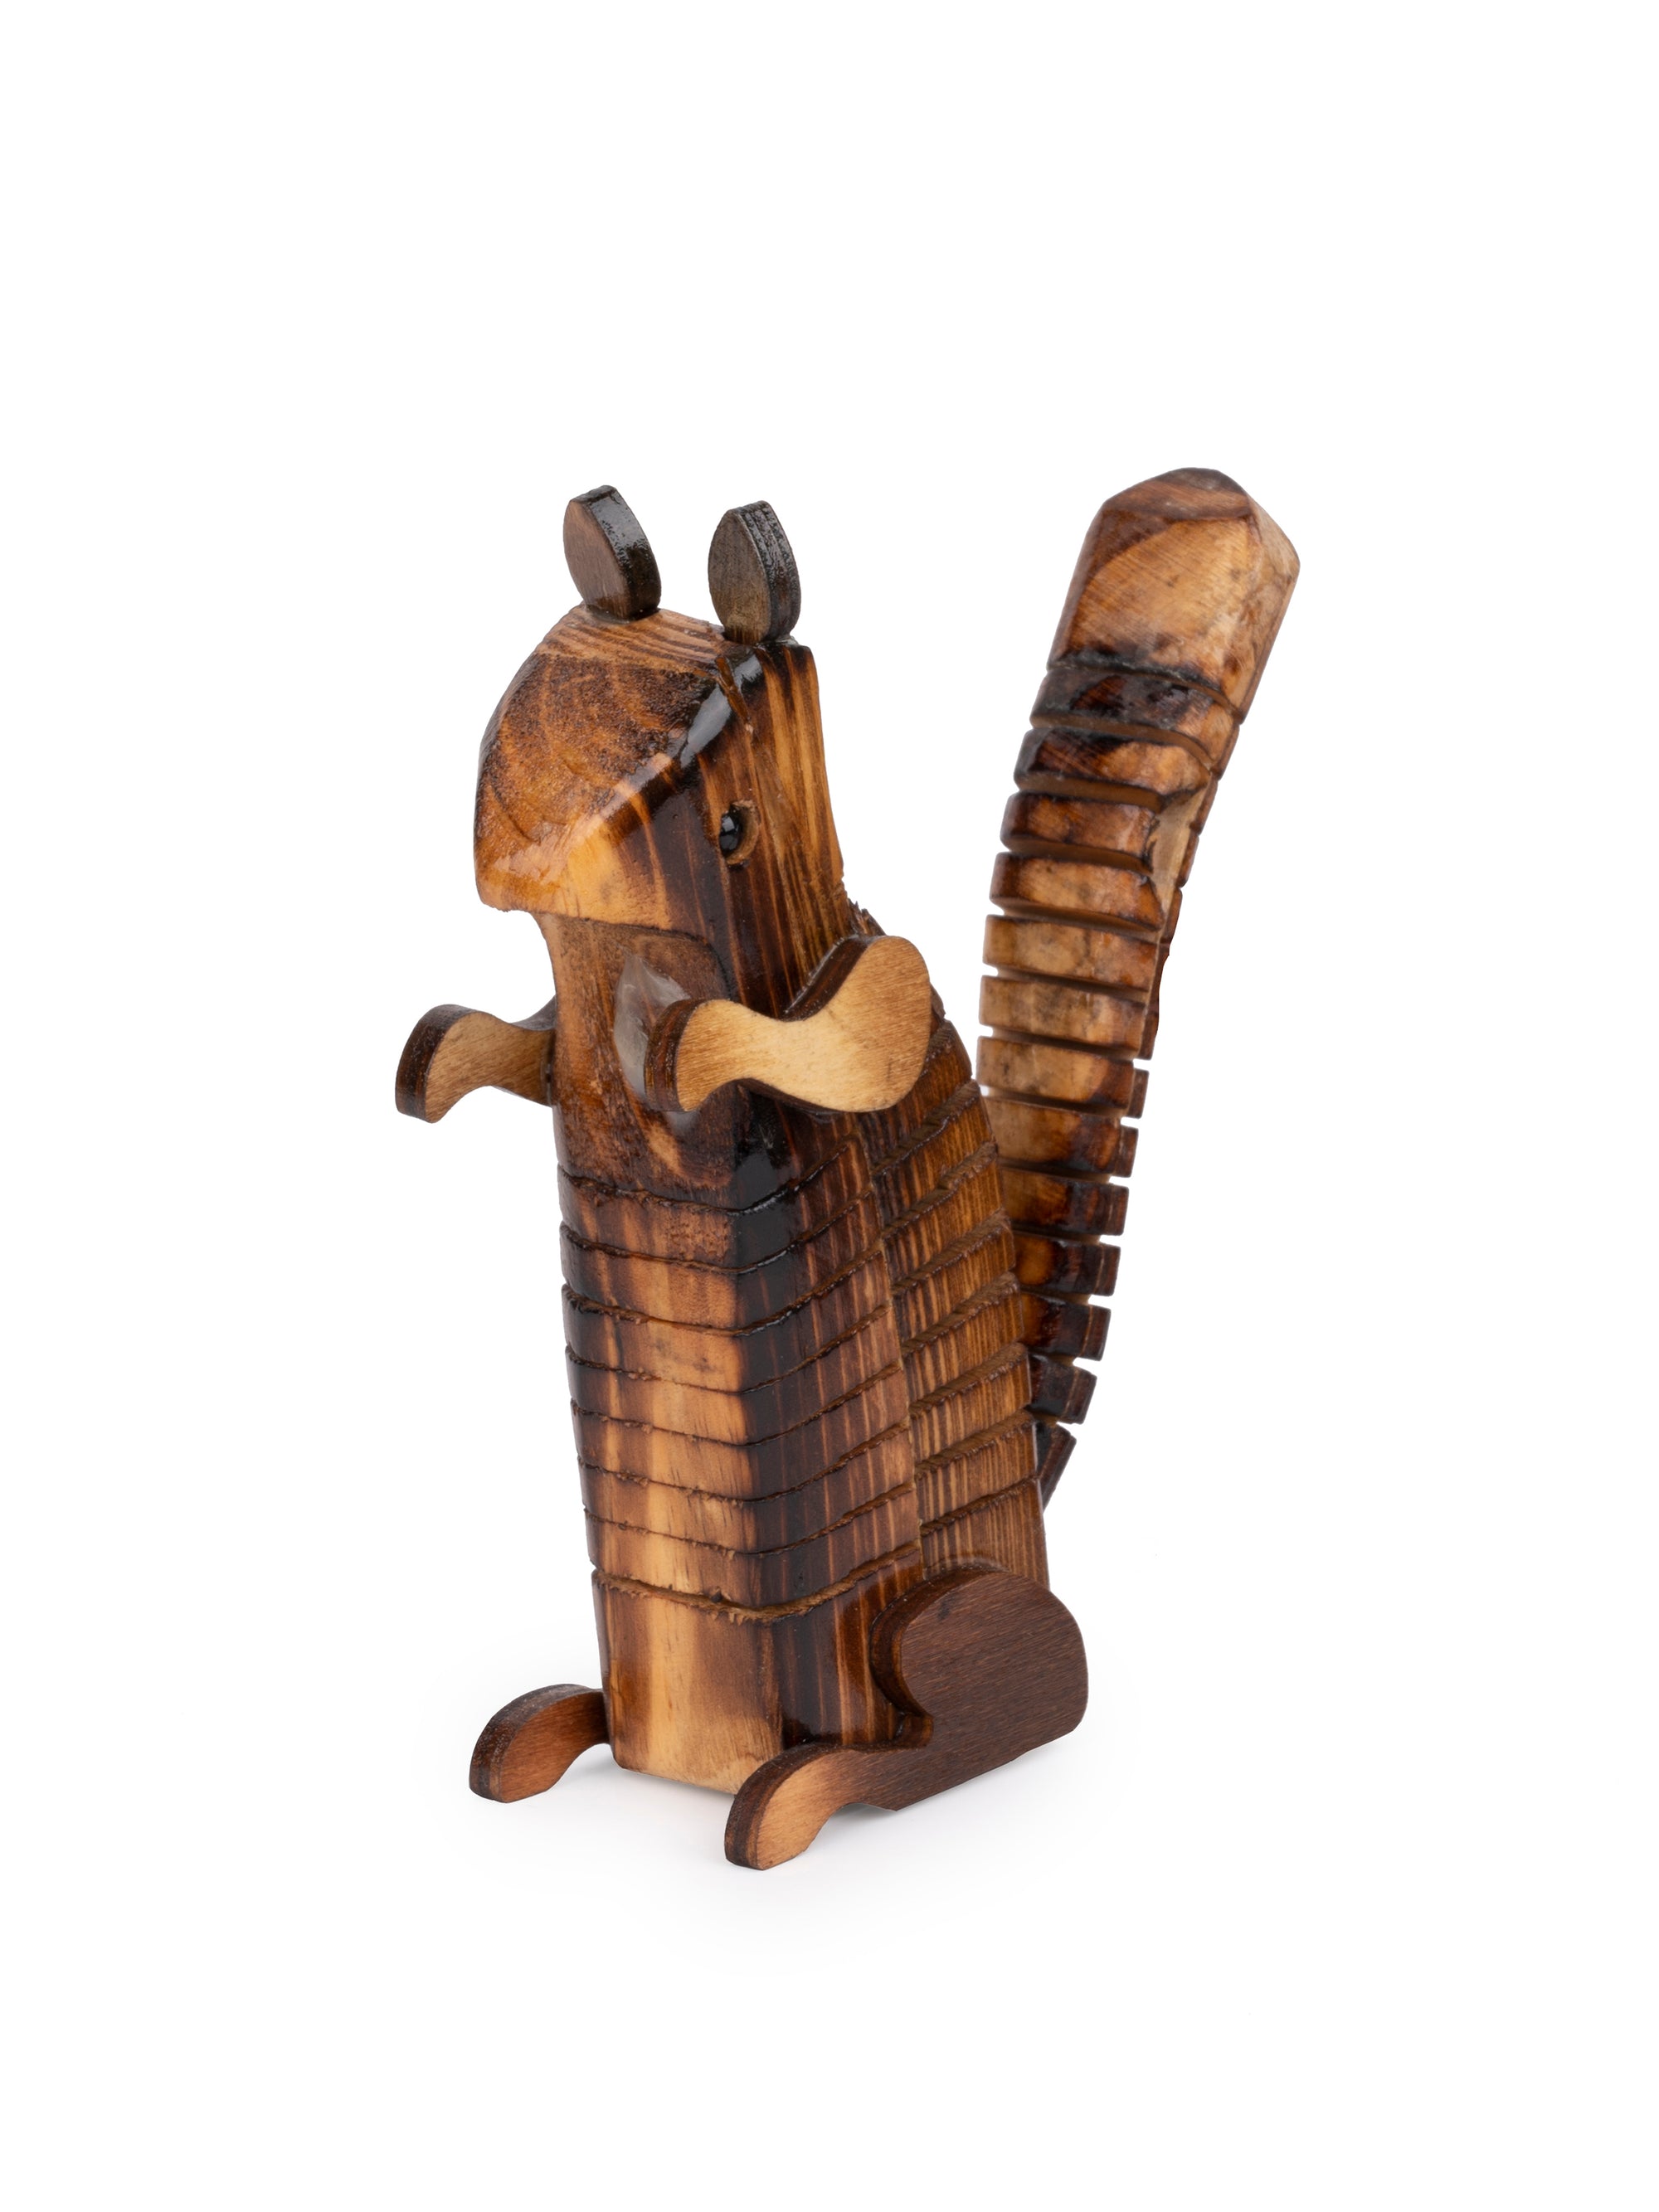 Shantiniketan Art - Wooden Squirrel Decorative Showpiece / Toy - The Heritage Artifacts